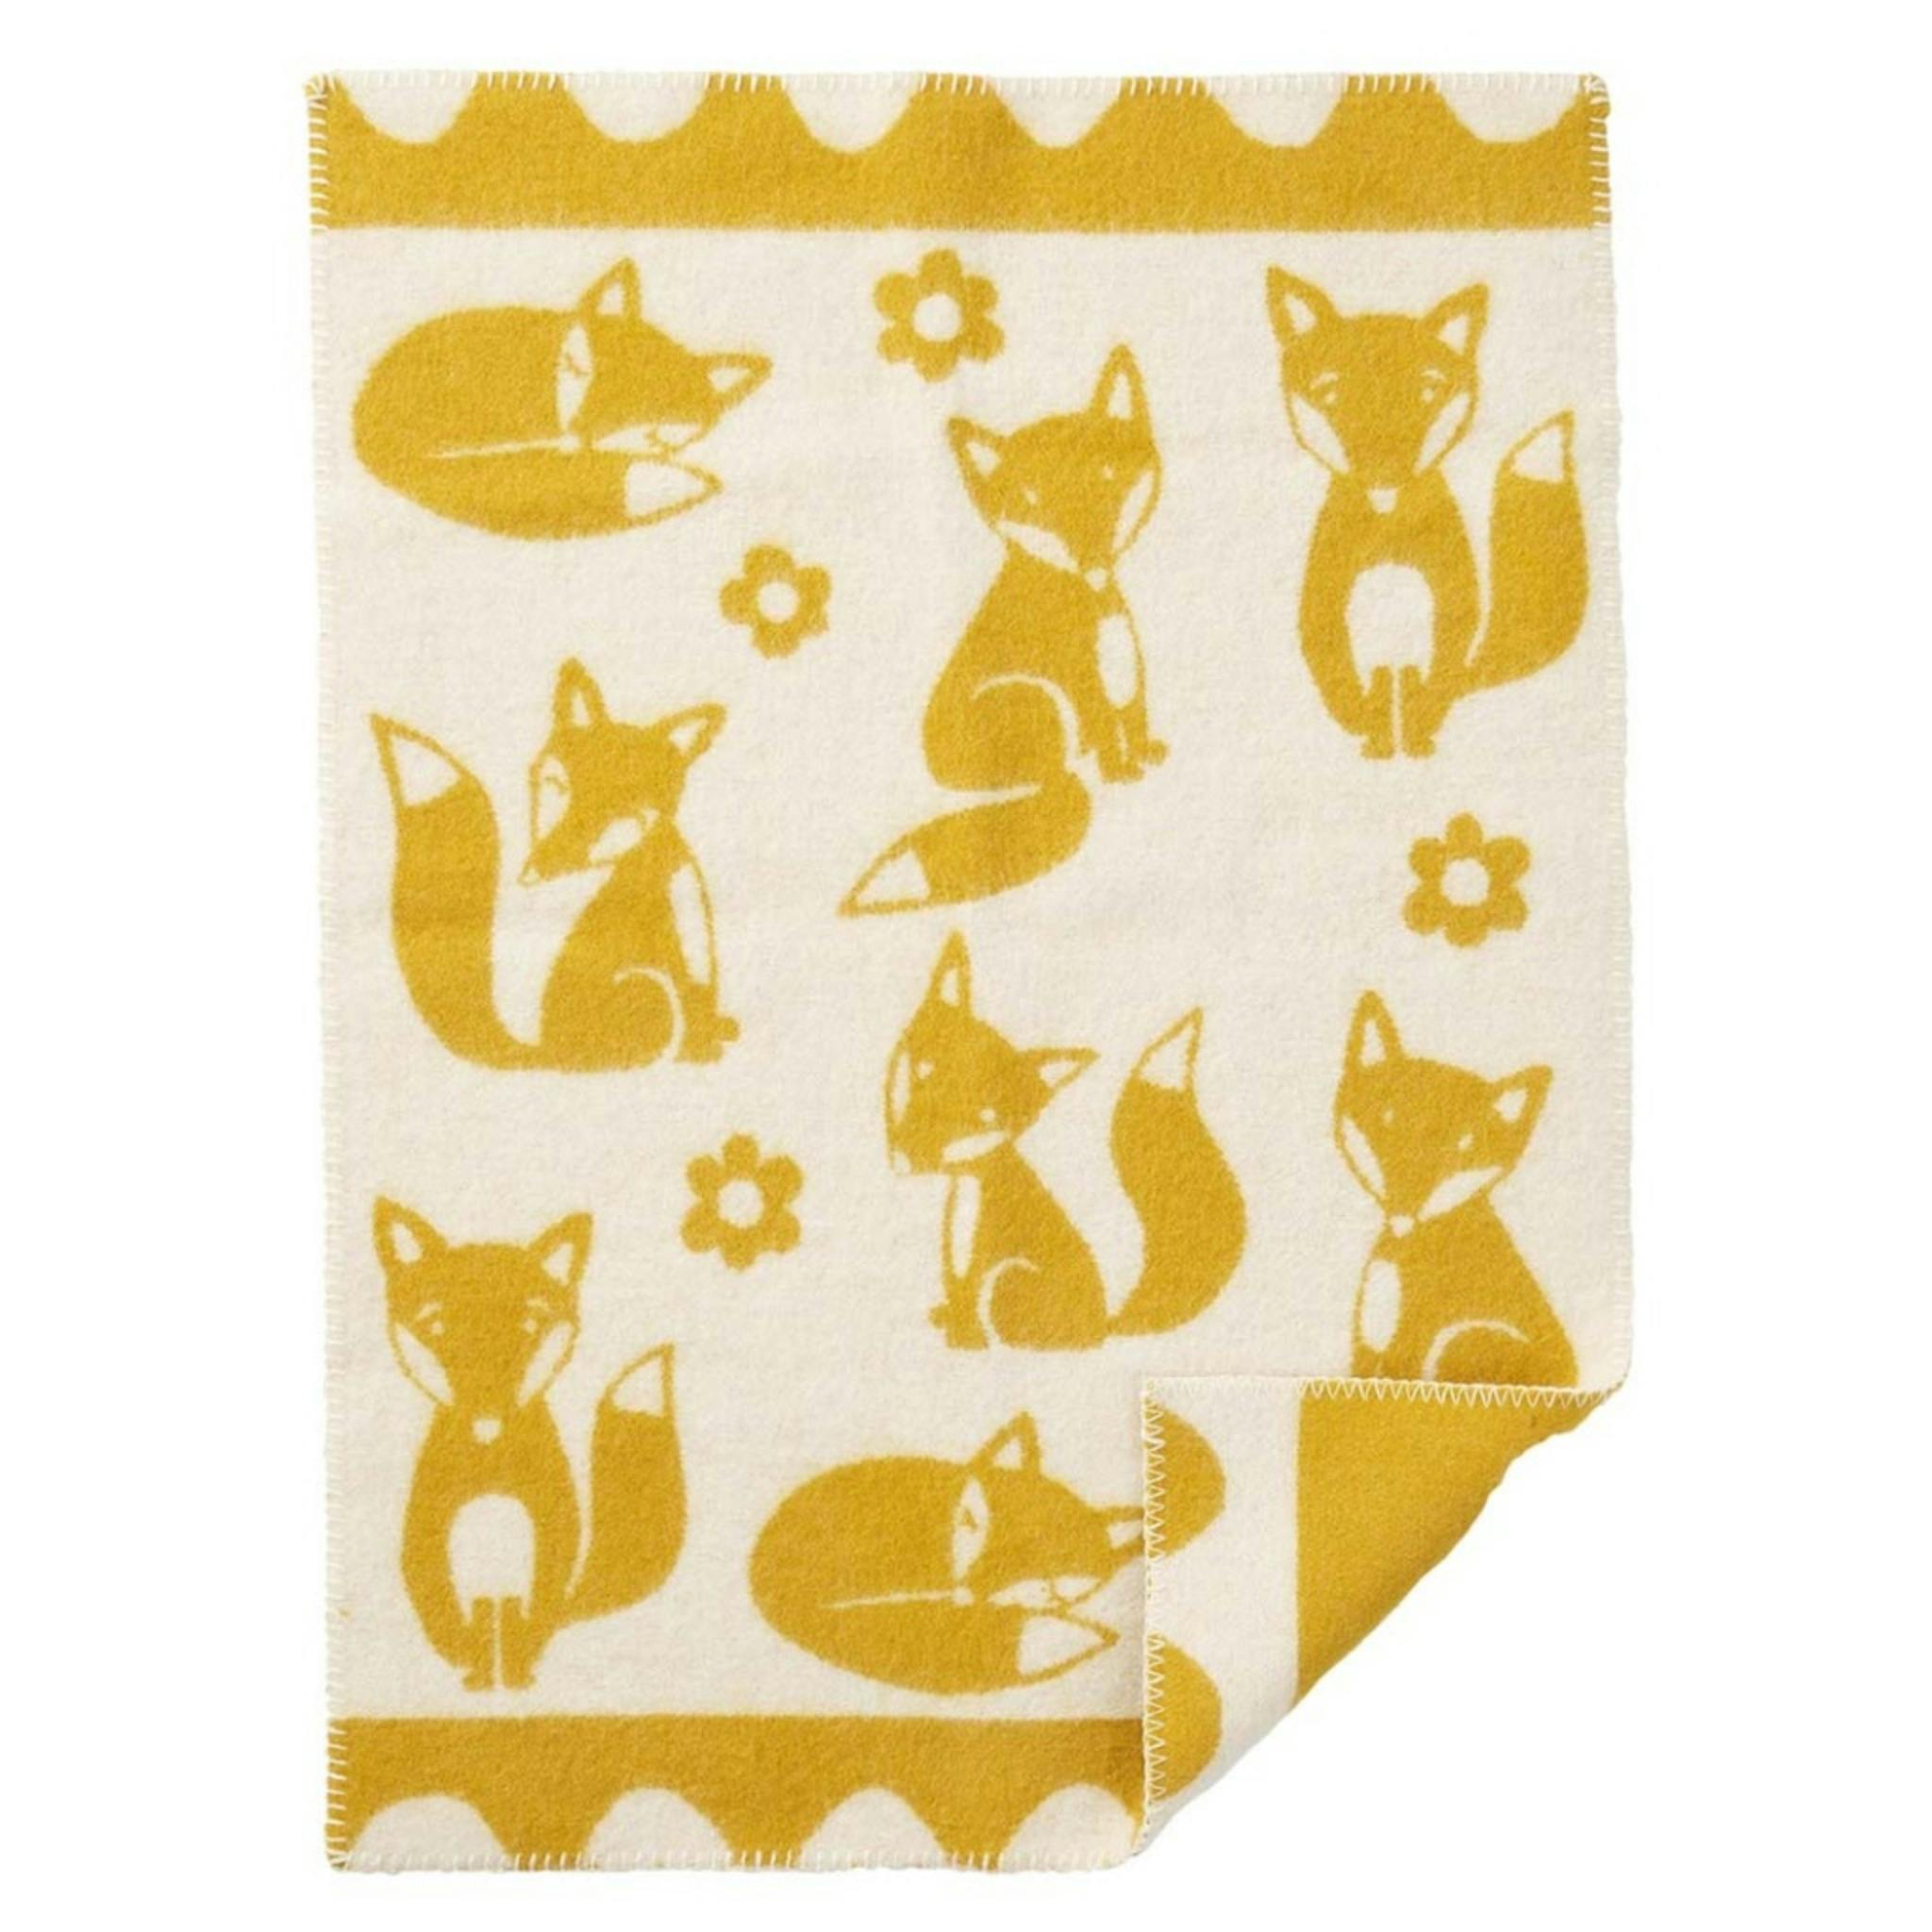 Fin gul filt i ull mönstrad med rävar från Klippan filten gör sig fin i spjälsängen.